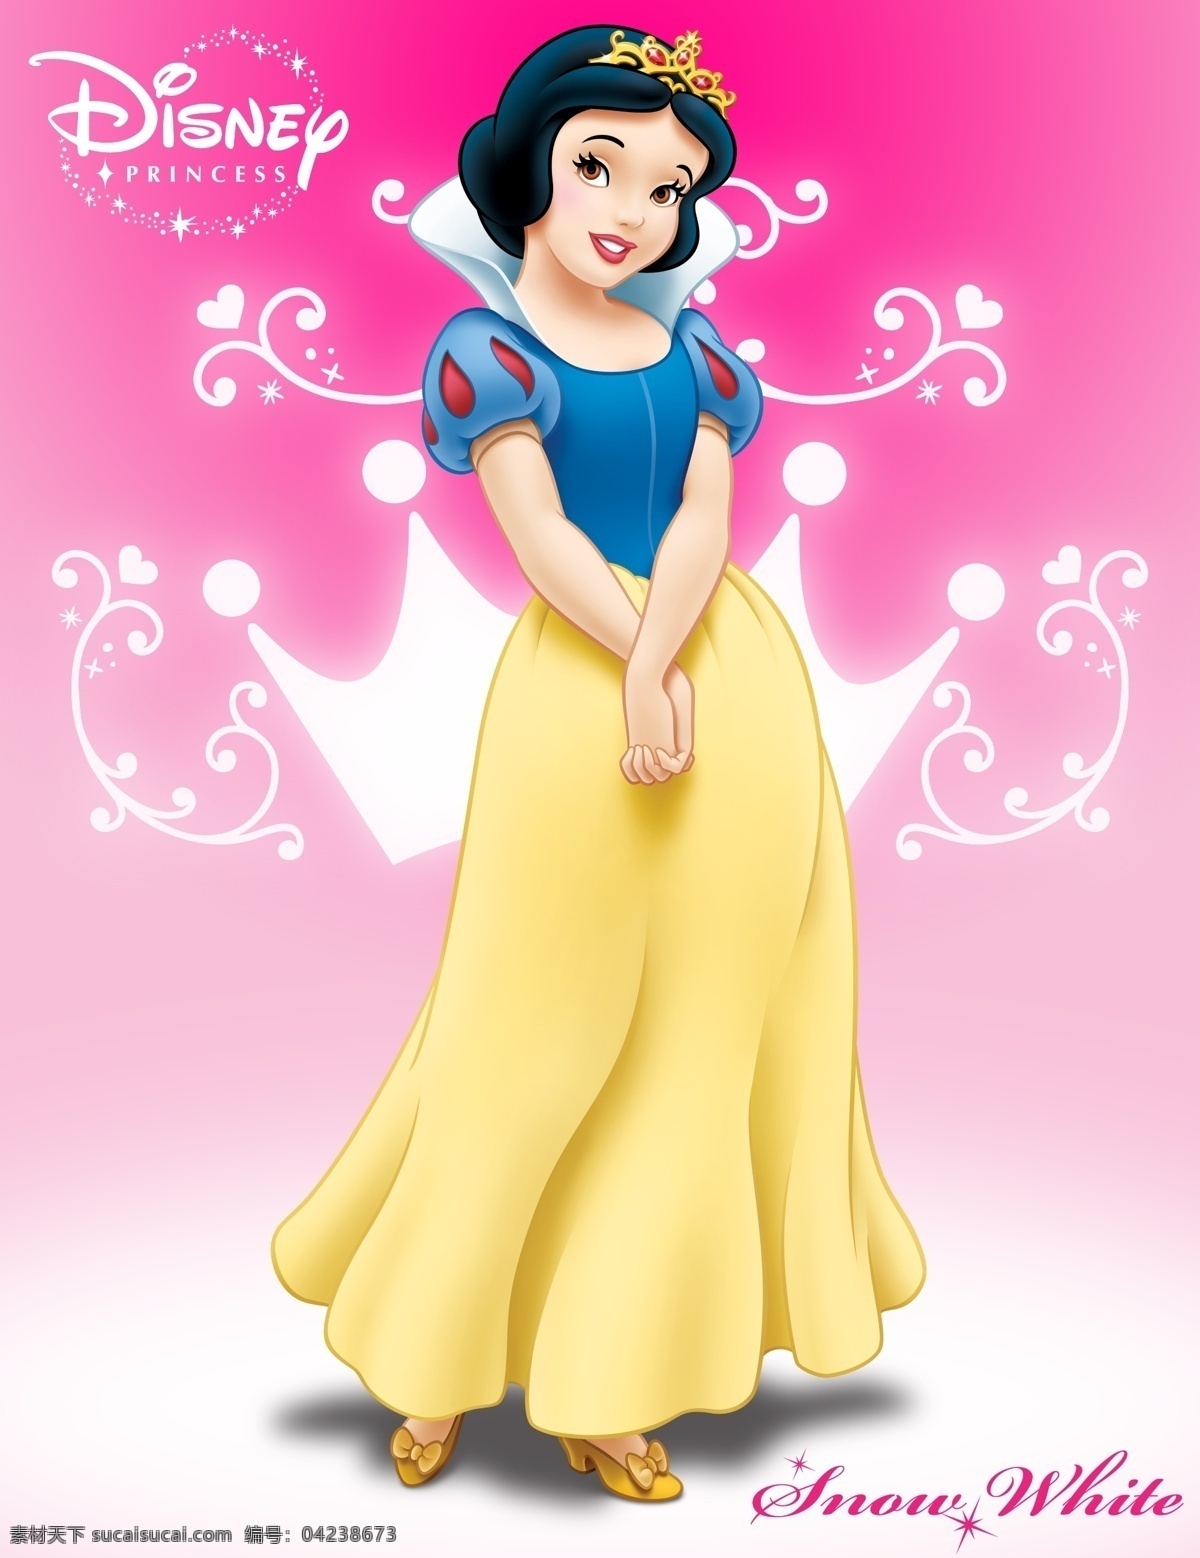 迪士尼 白雪公主 snow white 2010年版 七个小矮人 白马王子 恶毒继母 迪士尼小公主 人物 分层 源文件